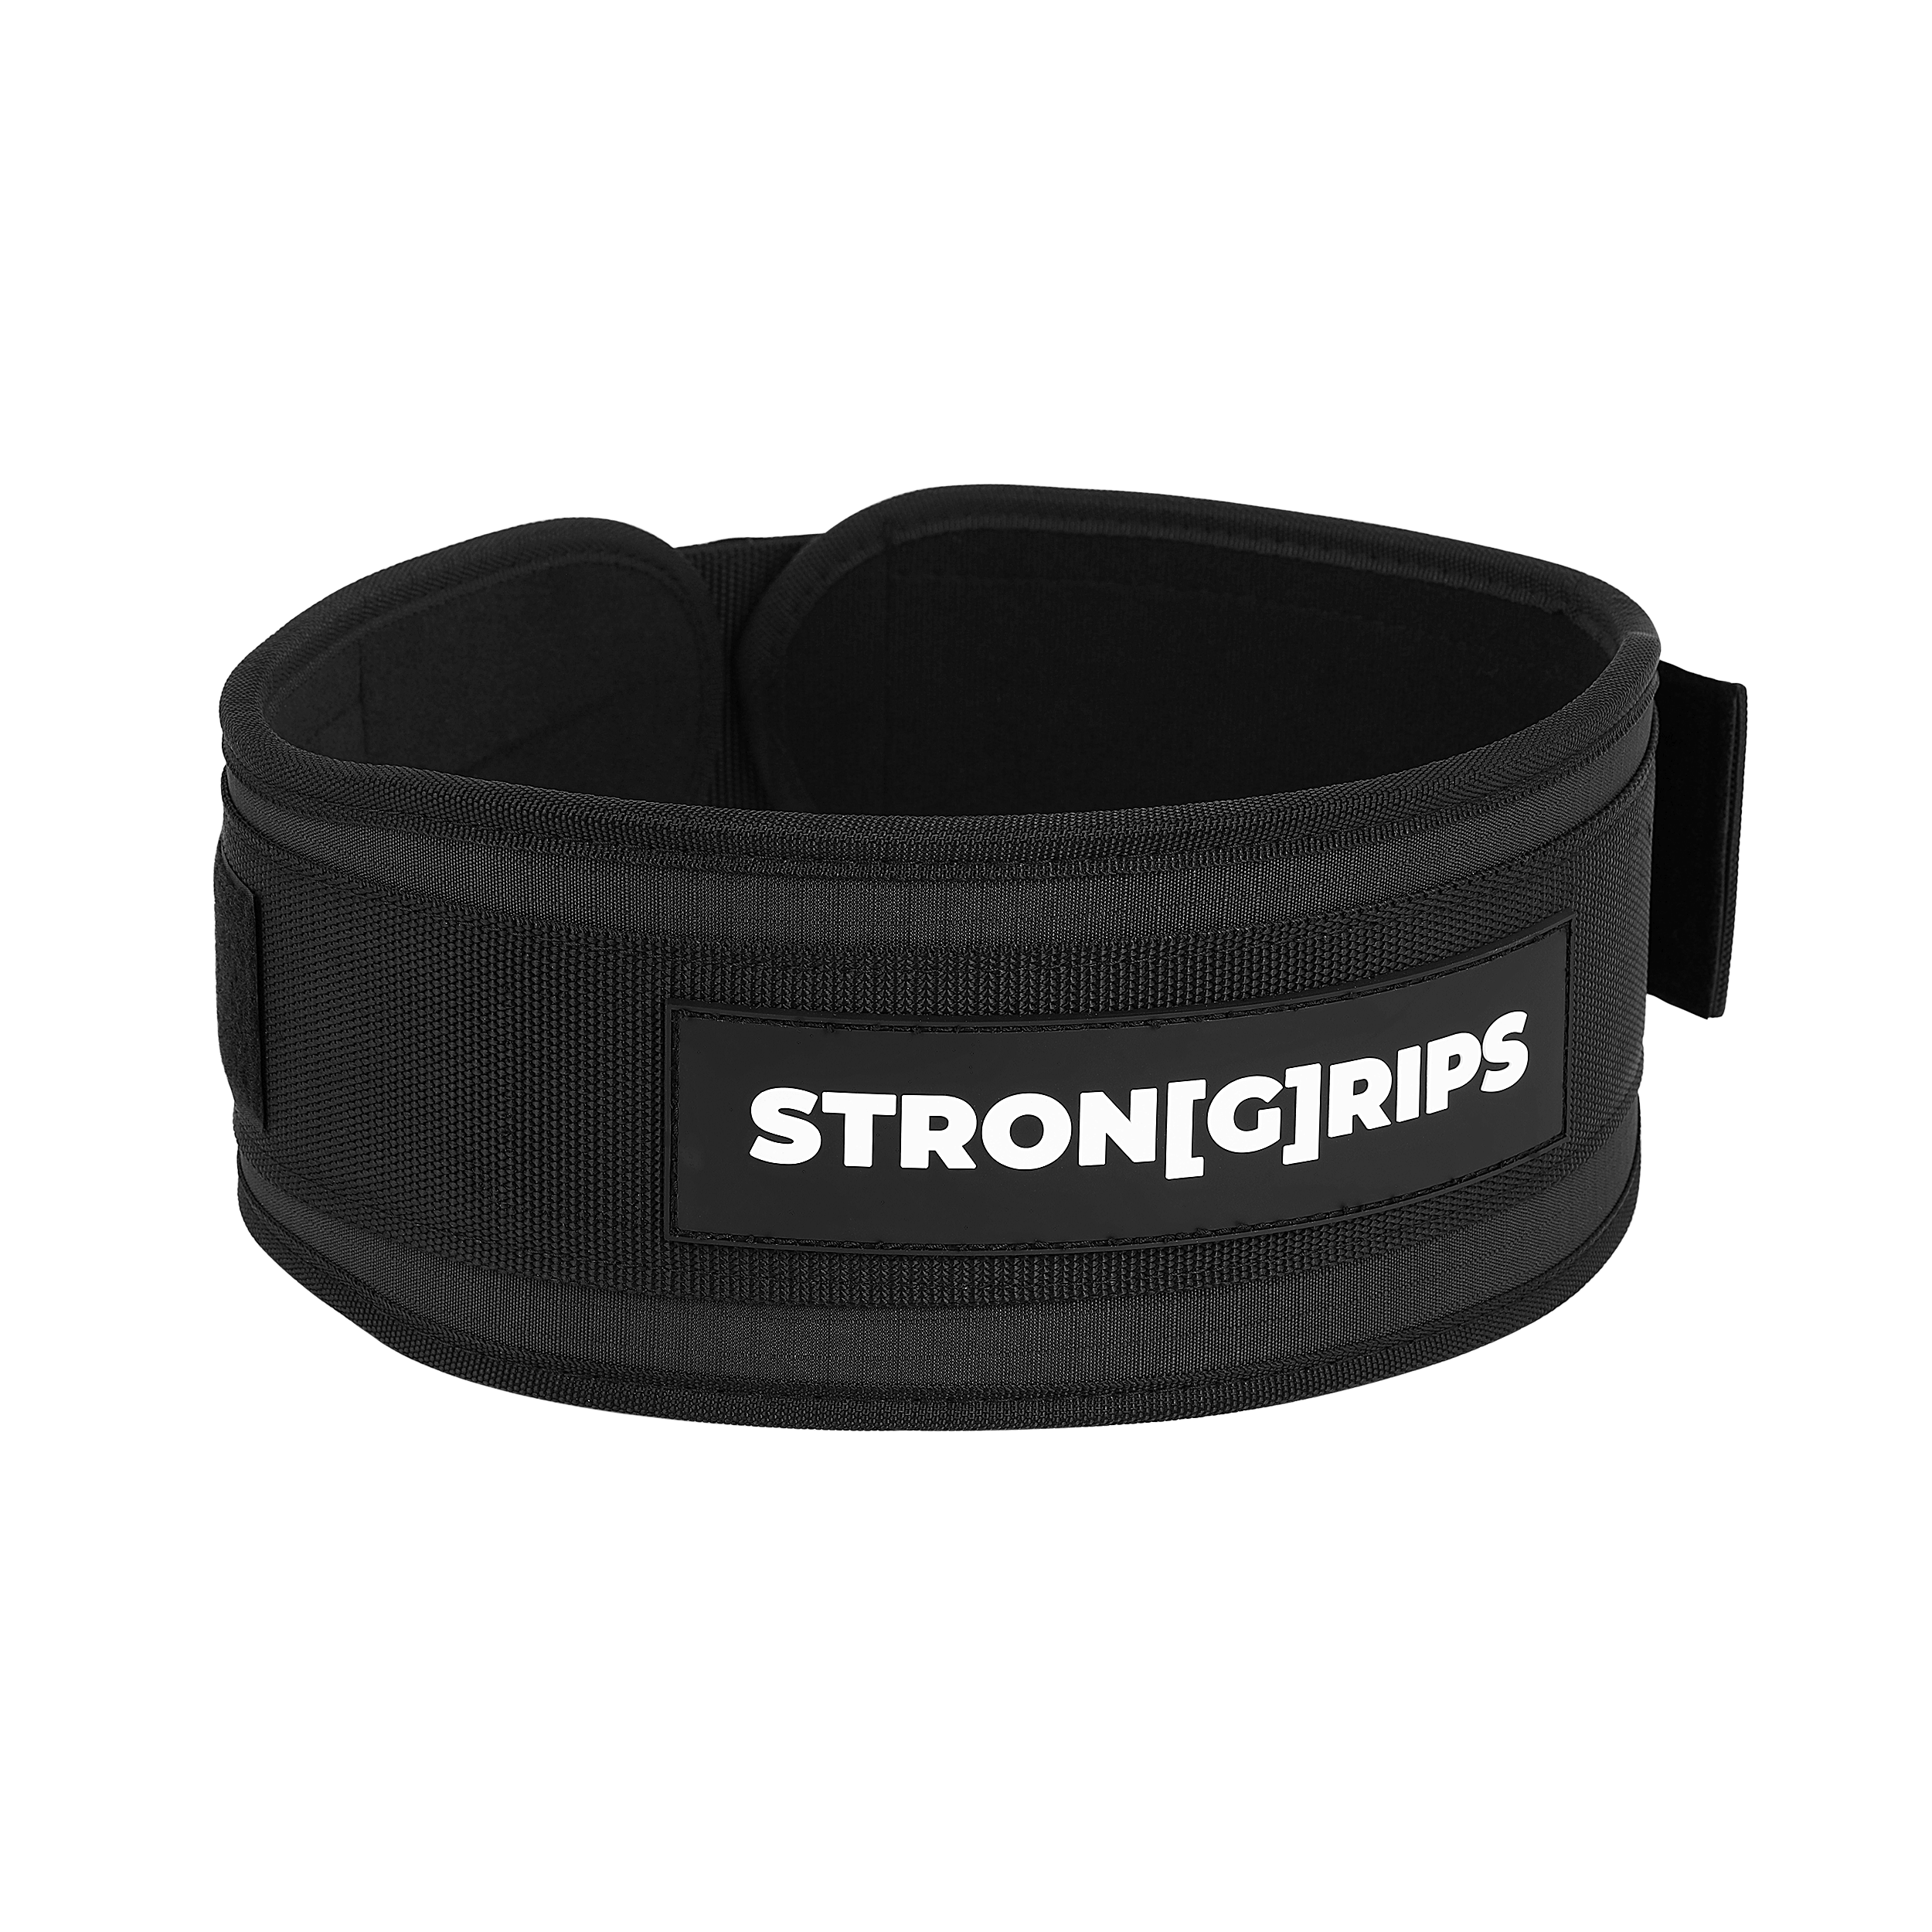 StronGrips ağırlık kemeri ile belinize tam destek